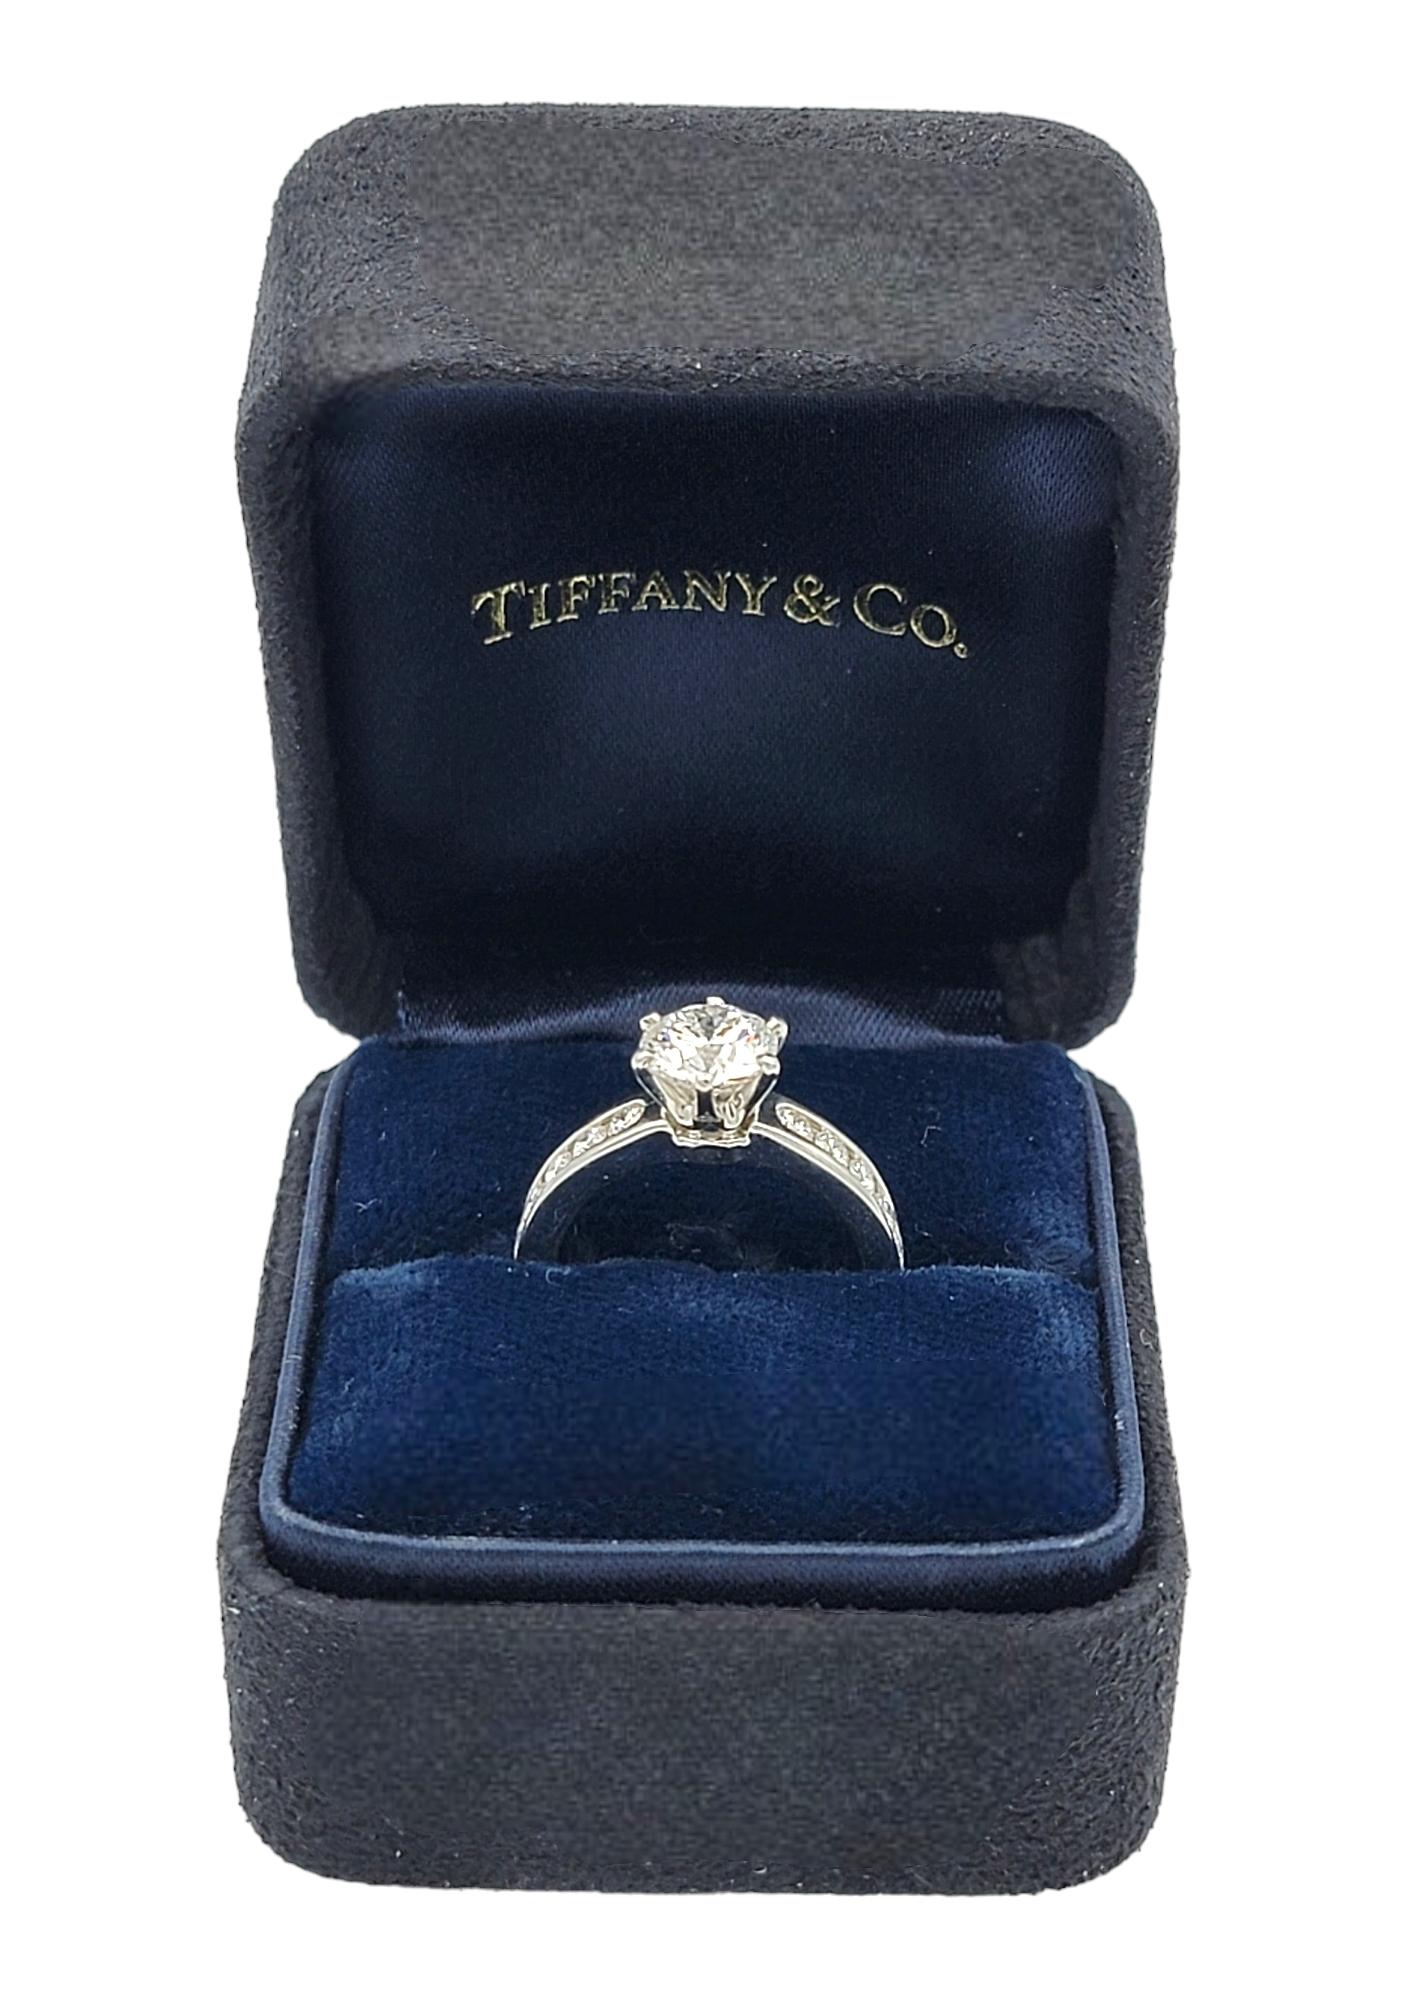 Taille de l'anneau : 4

Cette bague de fiançailles en platine de Tiffany & Co. dégage une élégance intemporelle grâce à son design simple mais exquis. La pièce maîtresse de cette bague est un superbe diamant de 1,07 carat, qui captive le spectateur